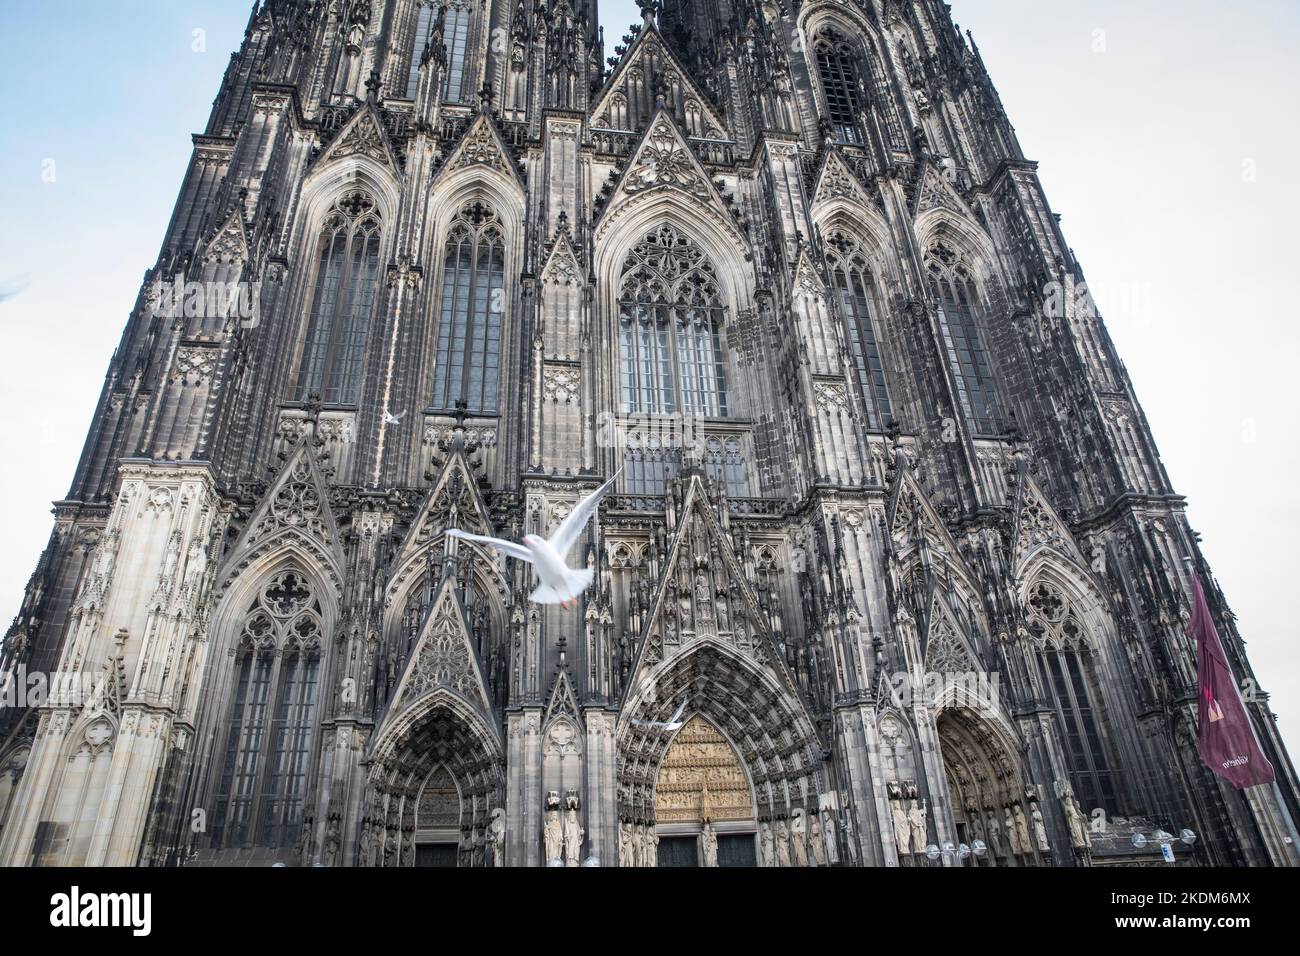 Möwen vor der Westfassade des Doms, Köln, Deutschland. Moewen vor der Westfassade des Doms, Köln, Deutschland. Stockfoto